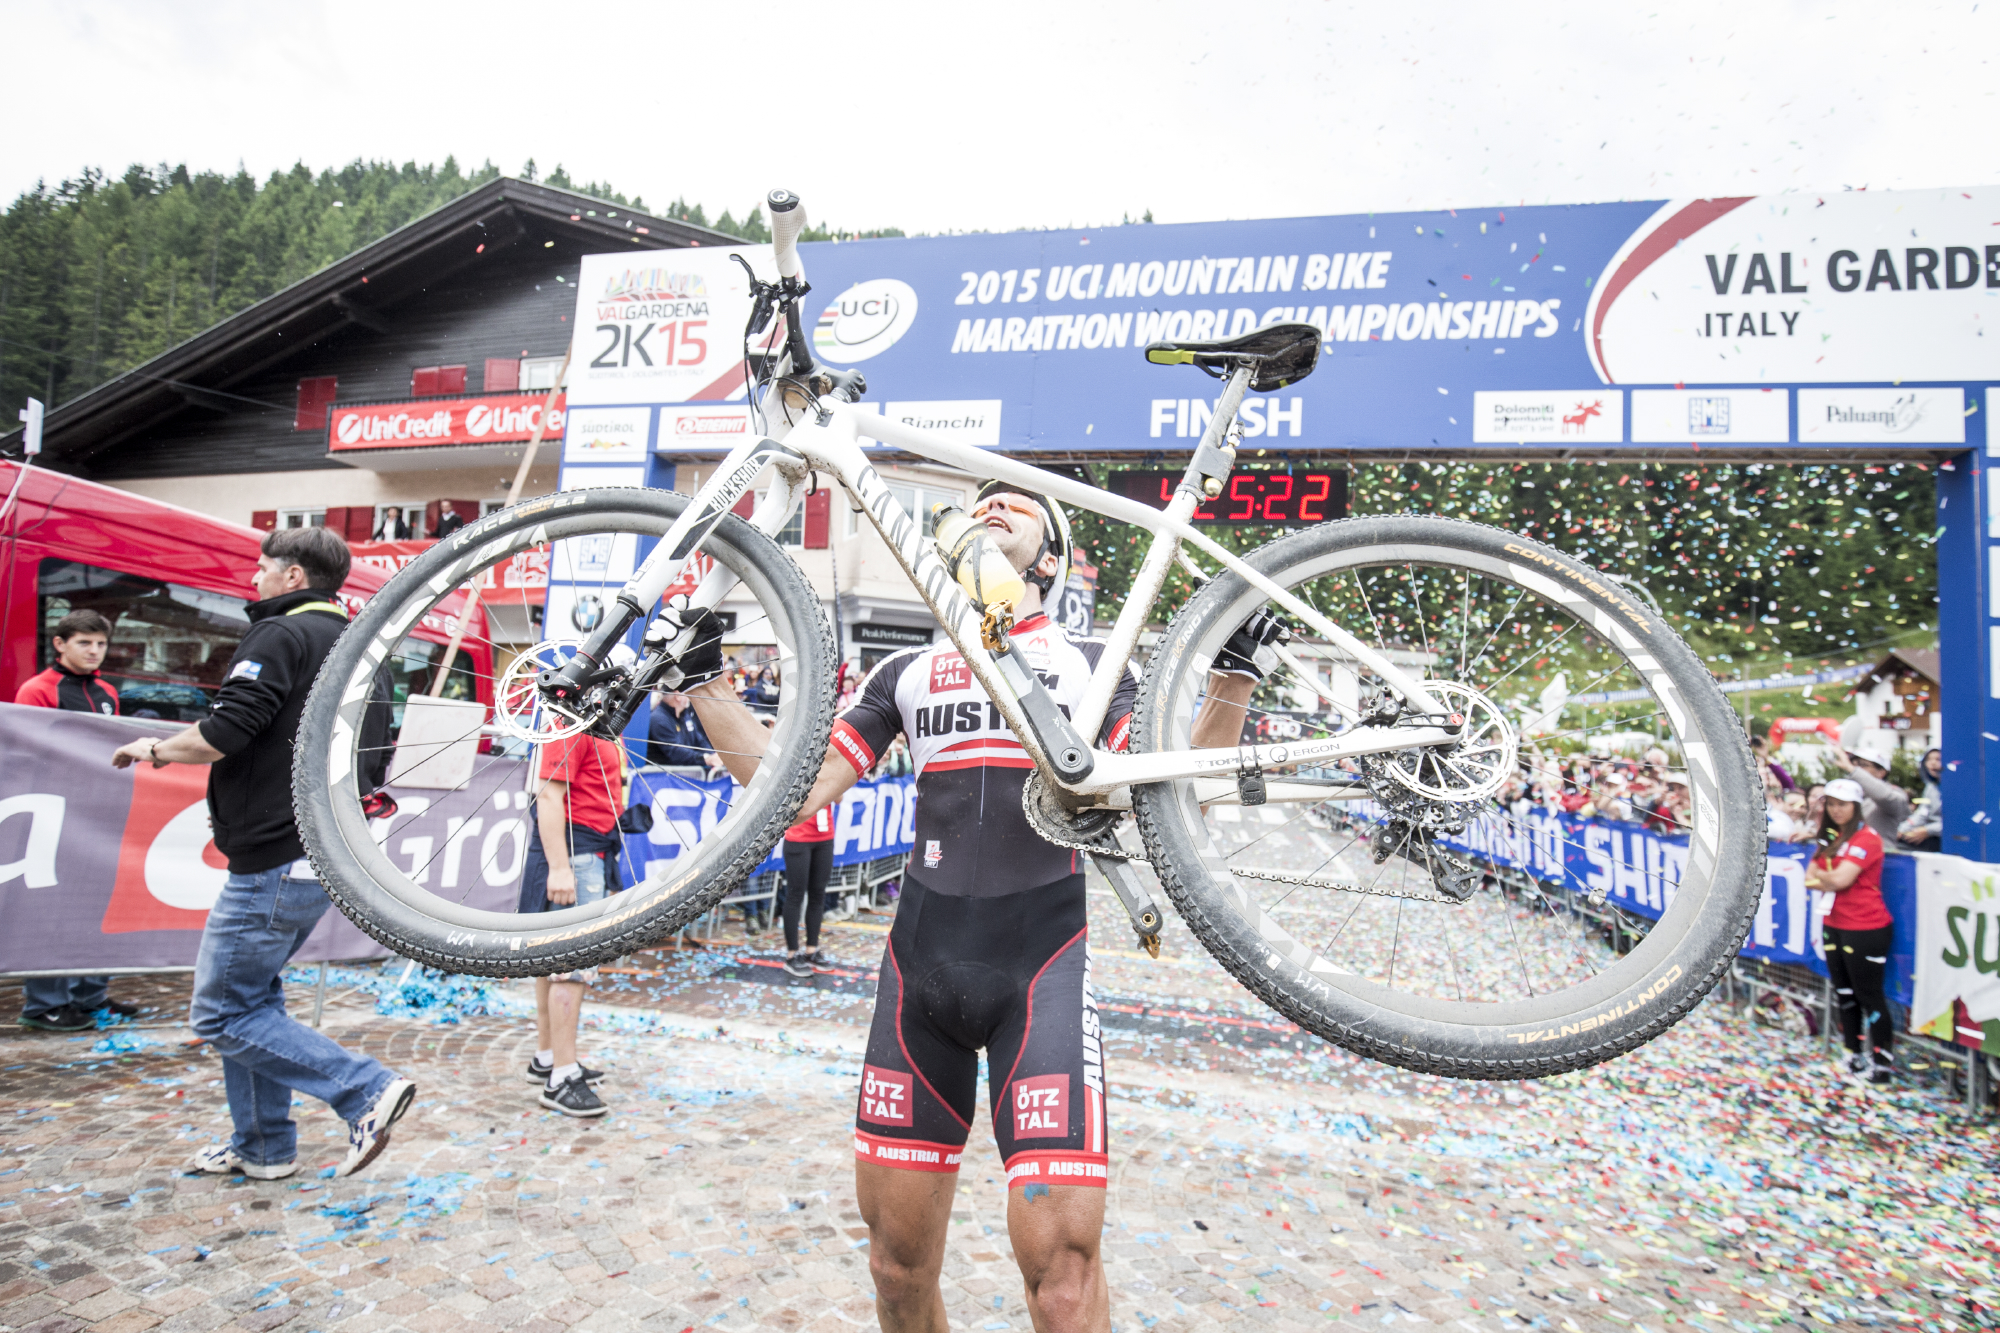 04 - Alban Lakata 2015 UCI XCM World Champion